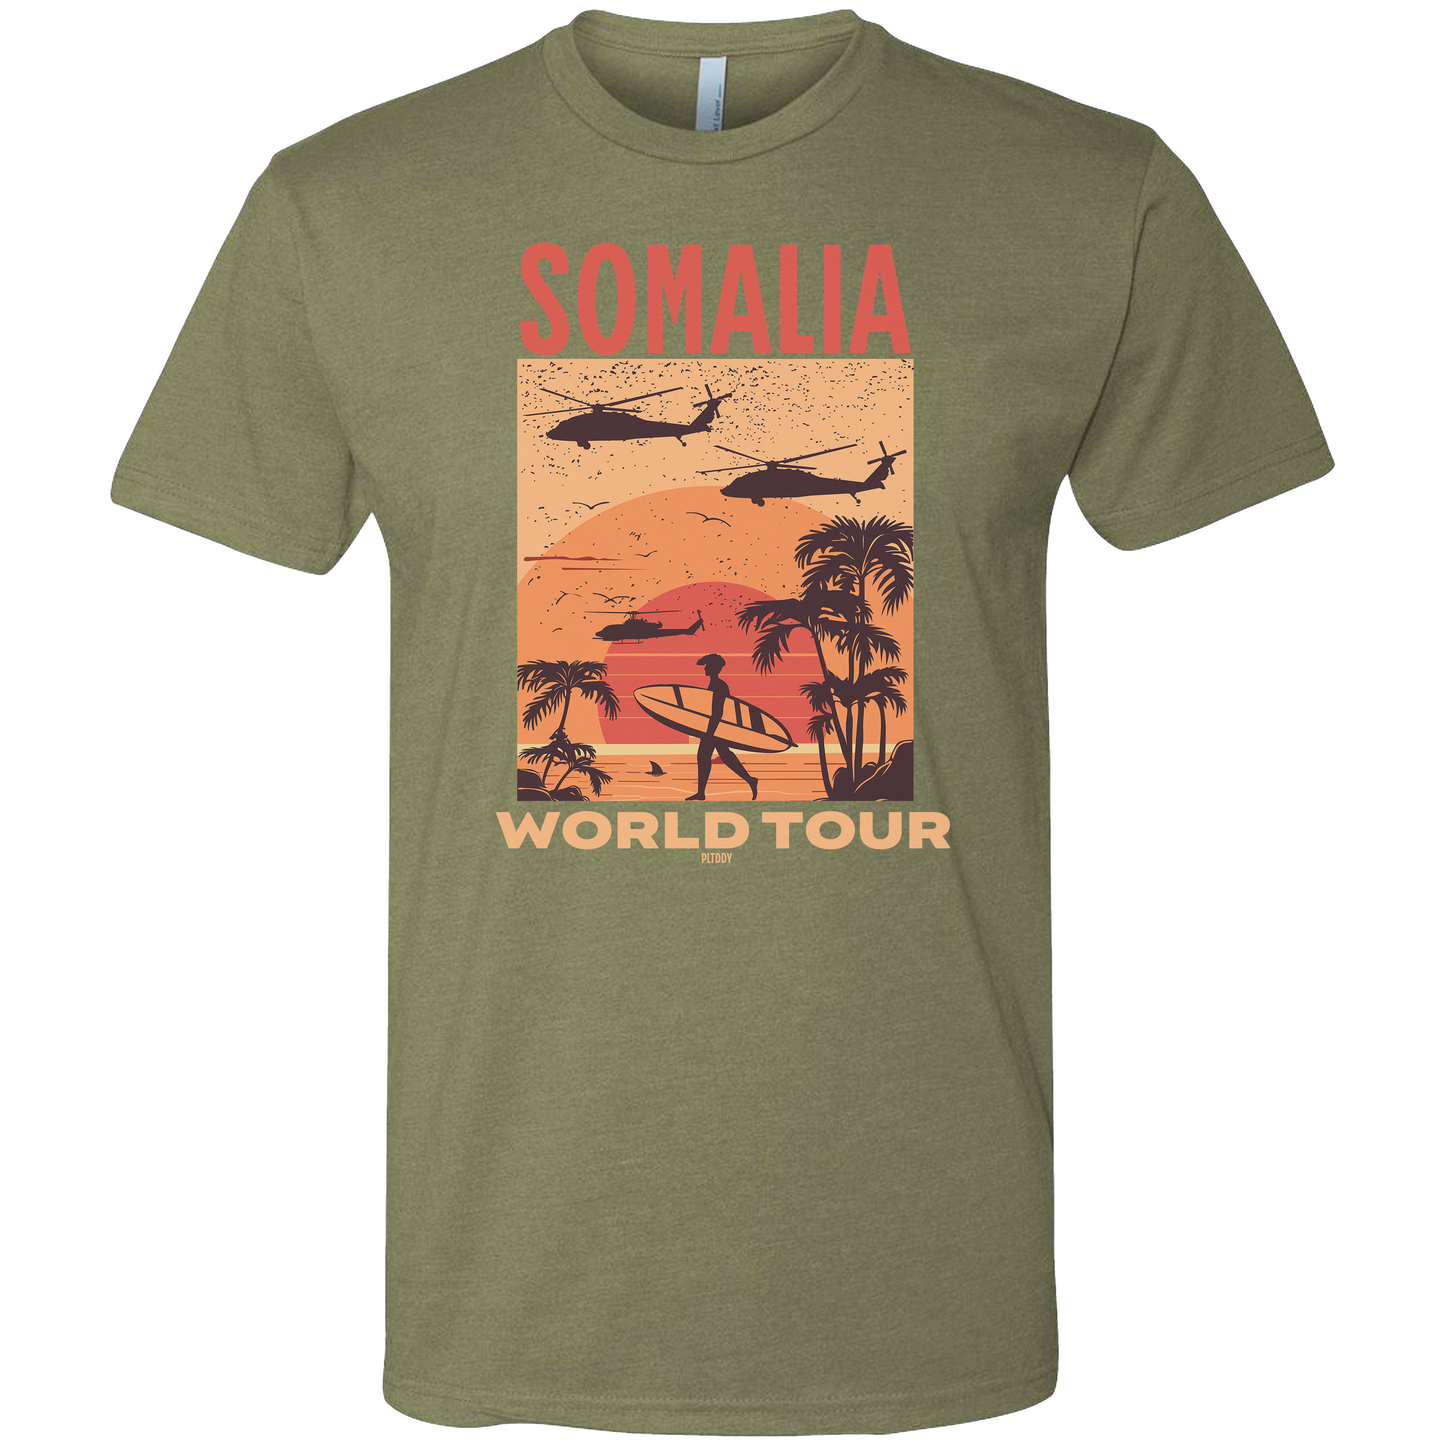 Somalia Tee